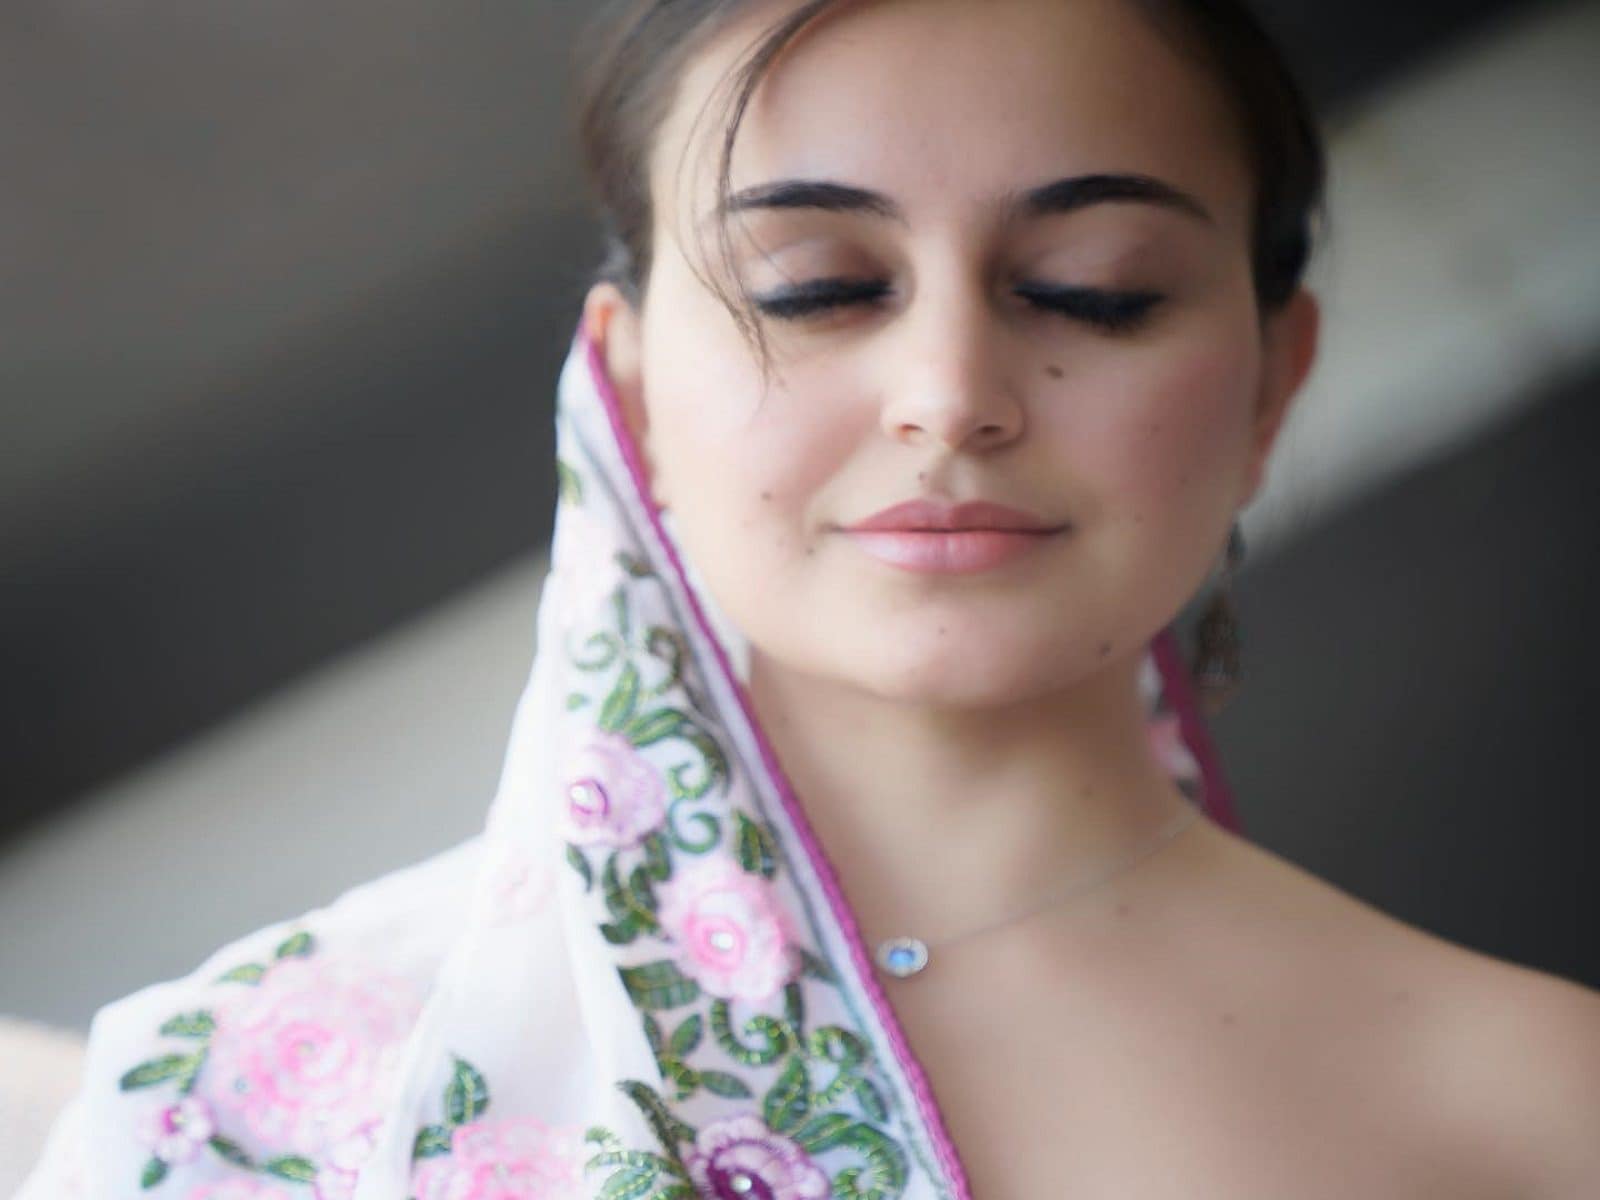 Afghan Yasmeena